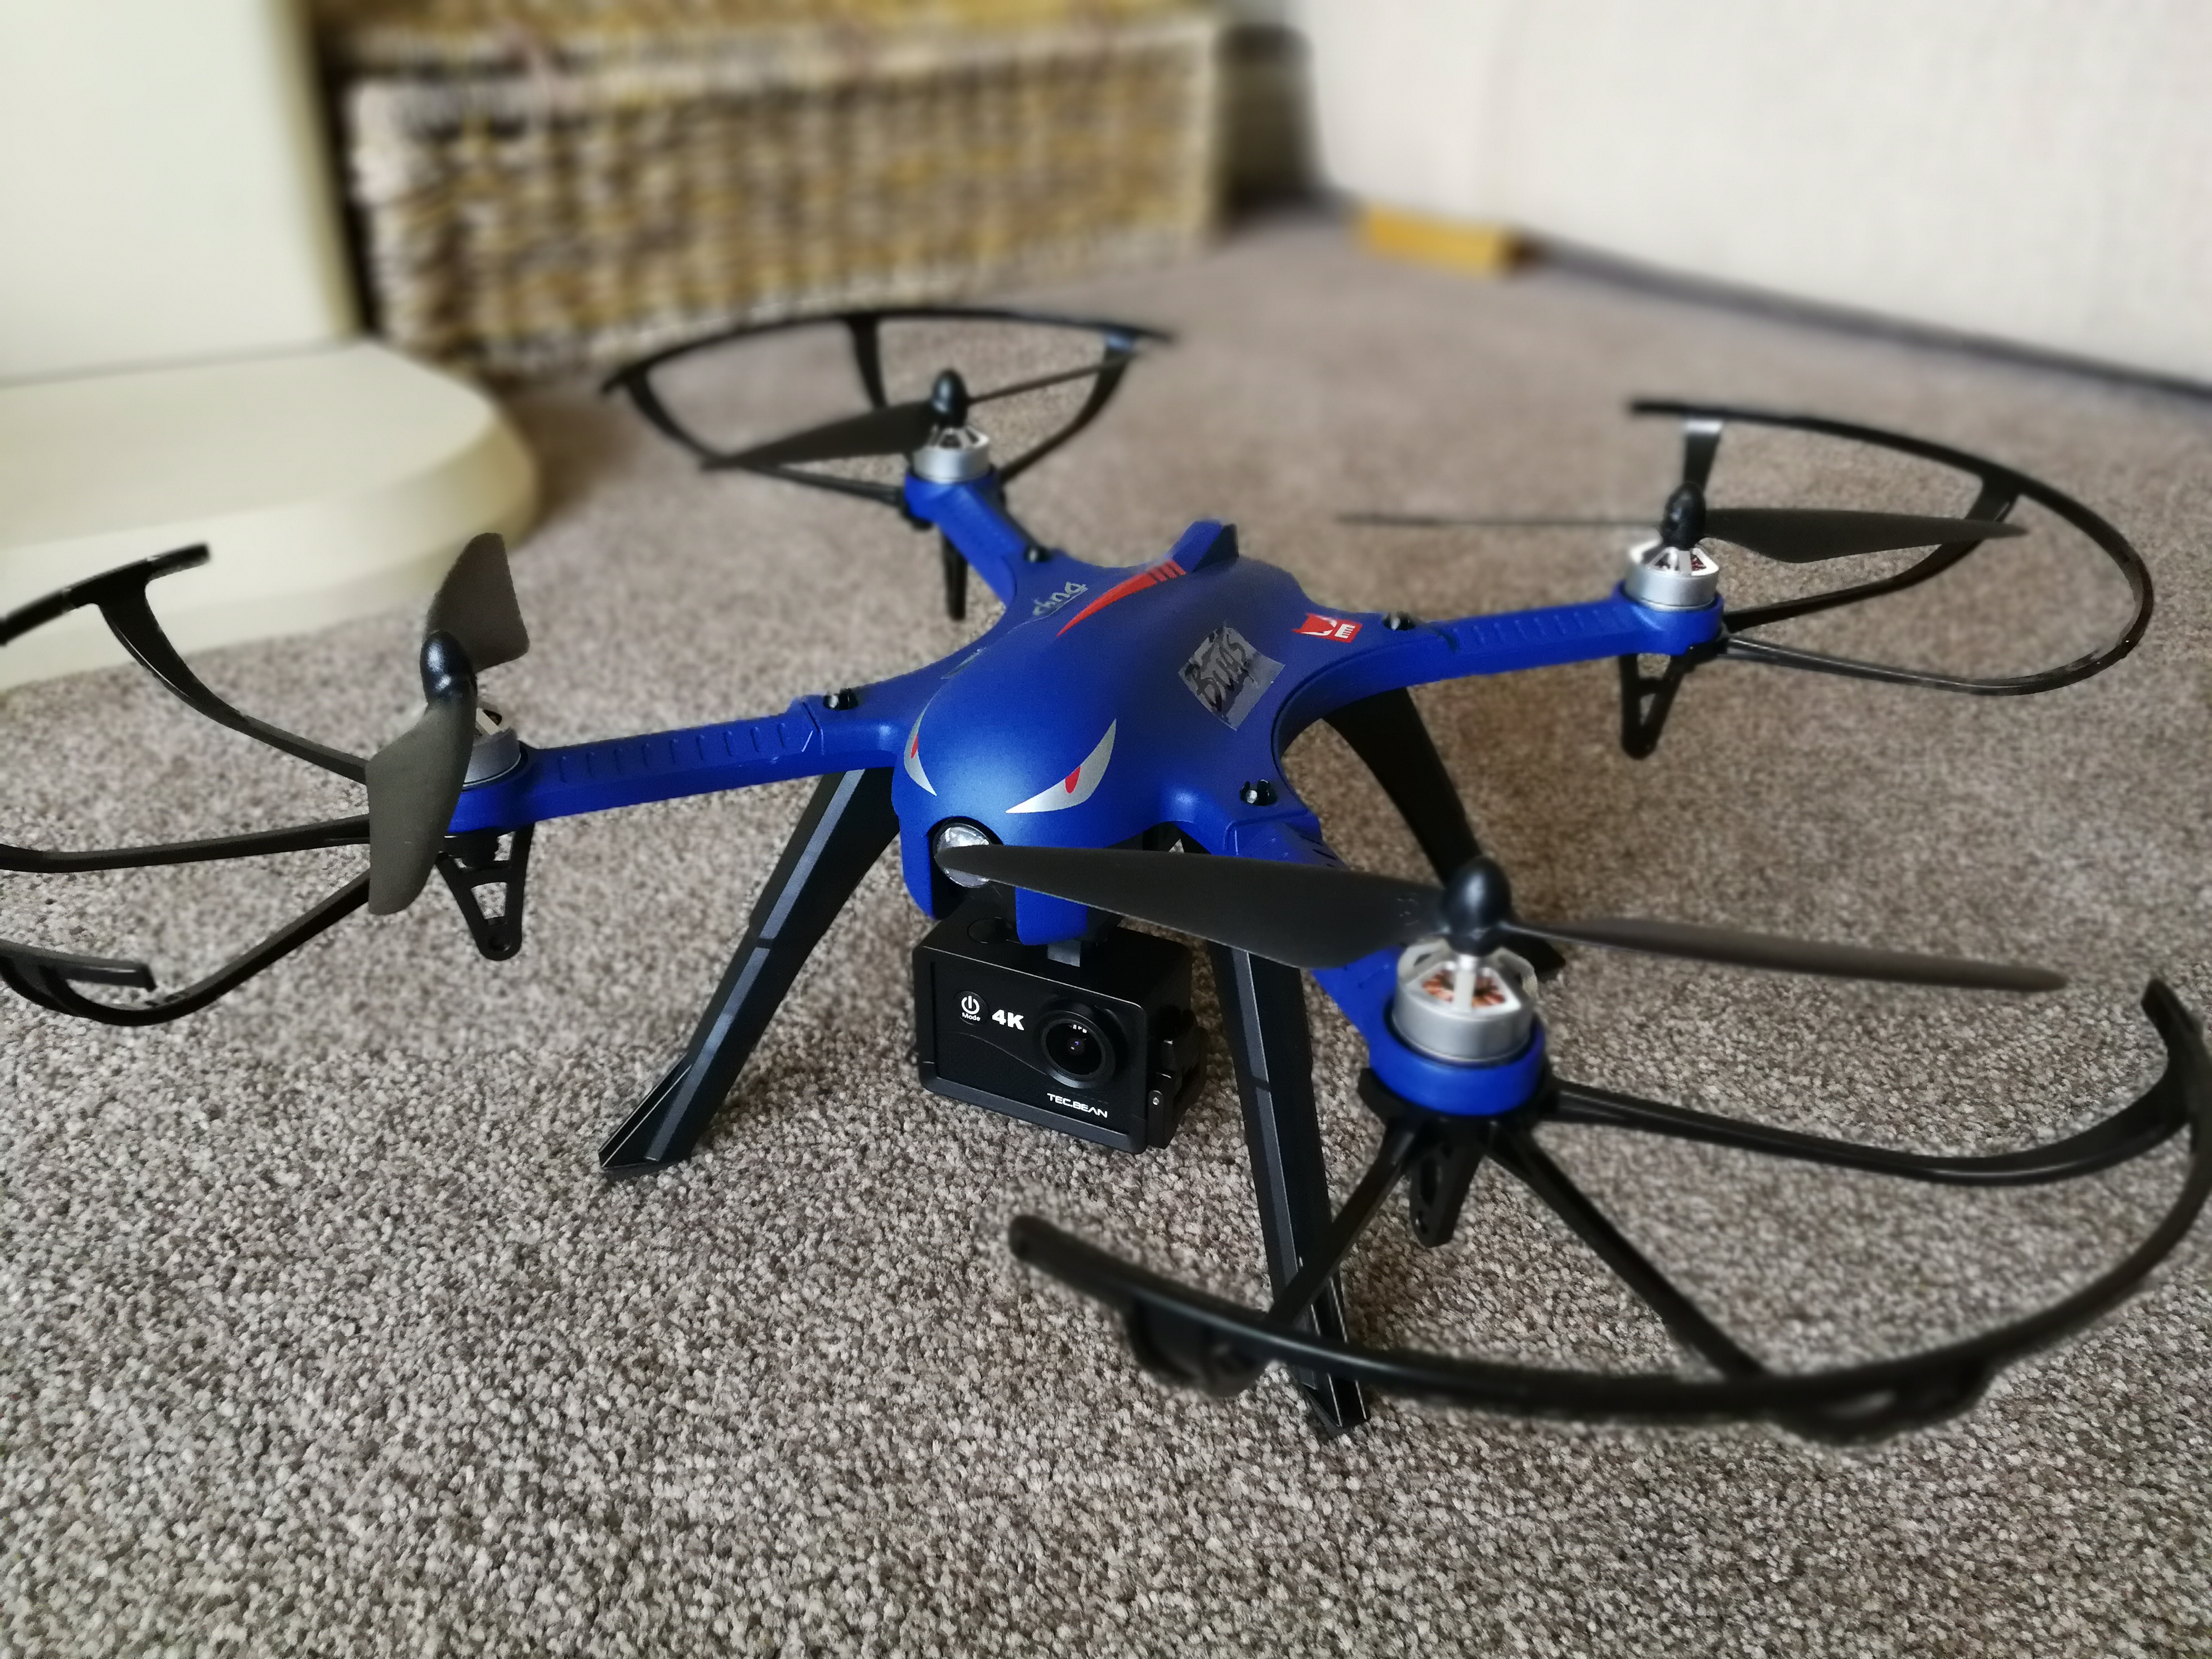 drone drocon bugs 3